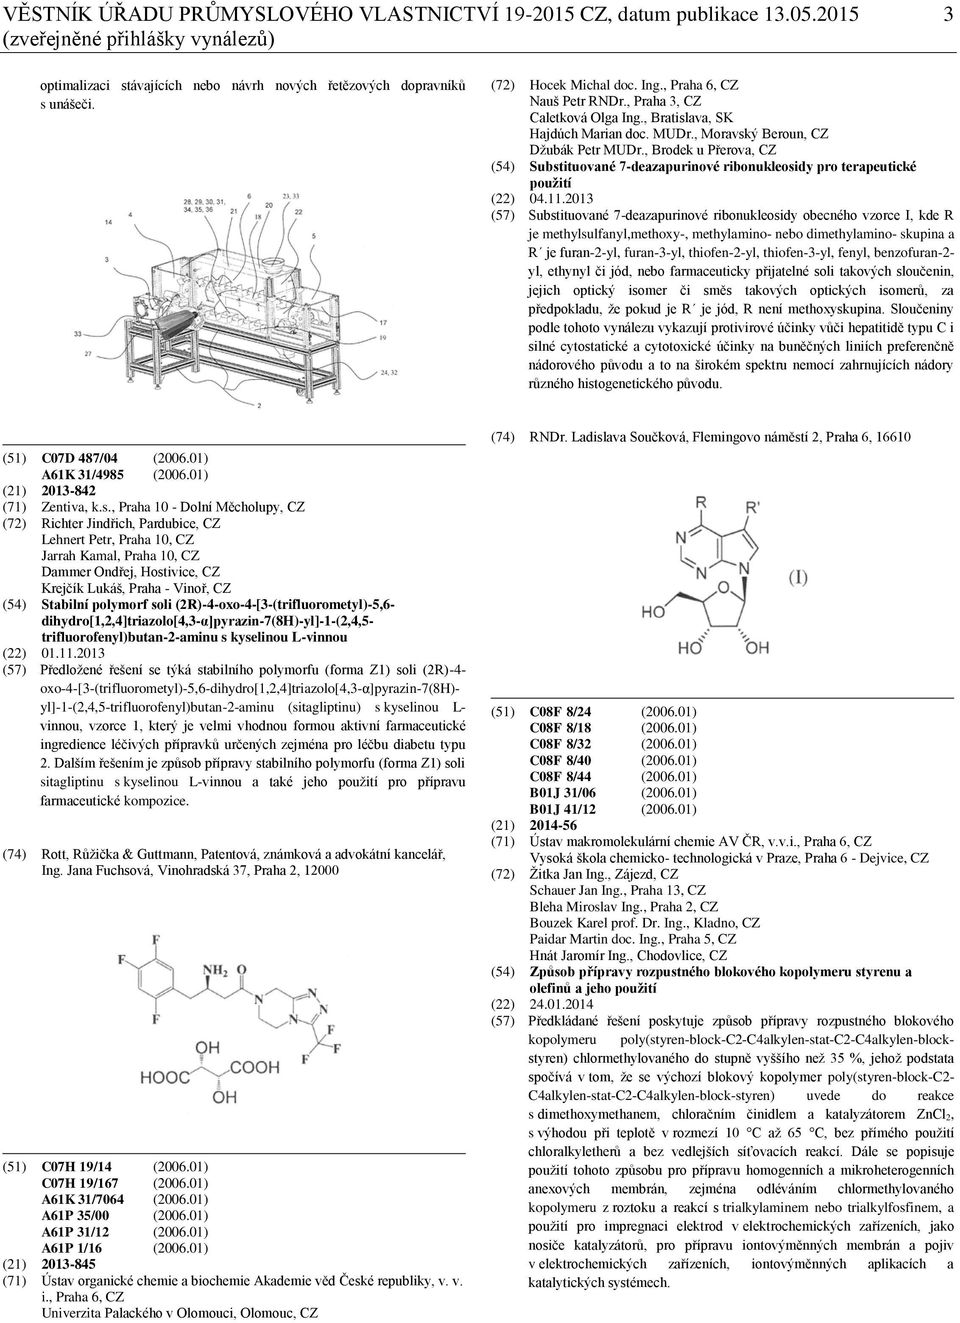 , Brodek u Přerova, CZ (54) Substituované 7-deazapurinové ribonukleosidy pro terapeutické použití (22) 04.11.